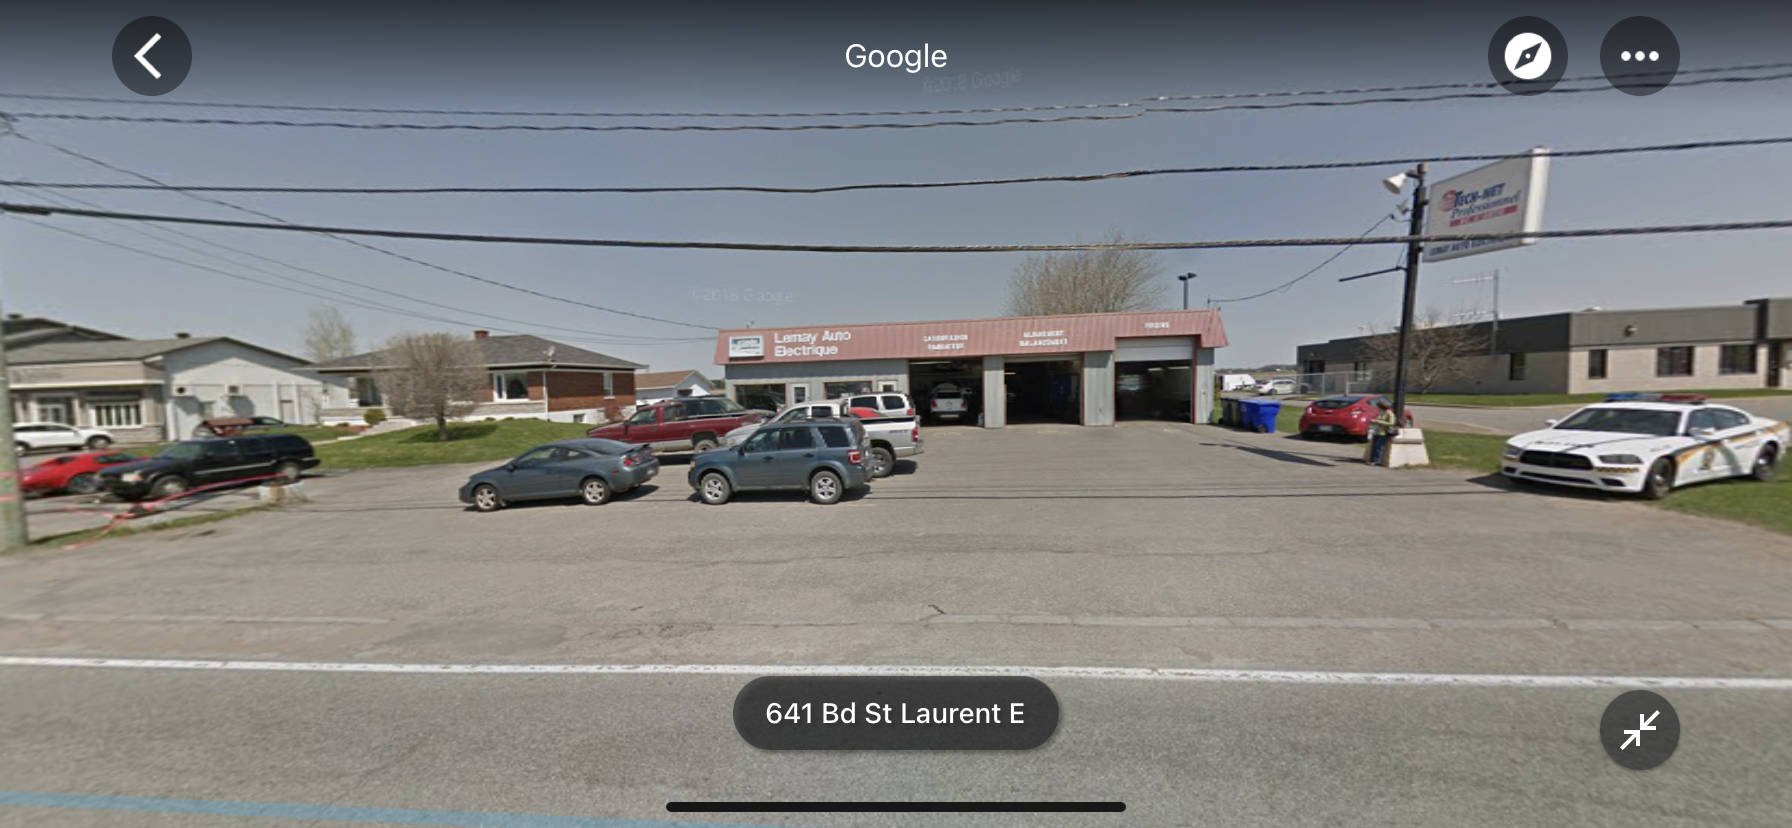 Garage Cédric Hénault Lemay Auto Électrique 641 Bd St Laurent E, Louiseville Quebec J5V 1J1